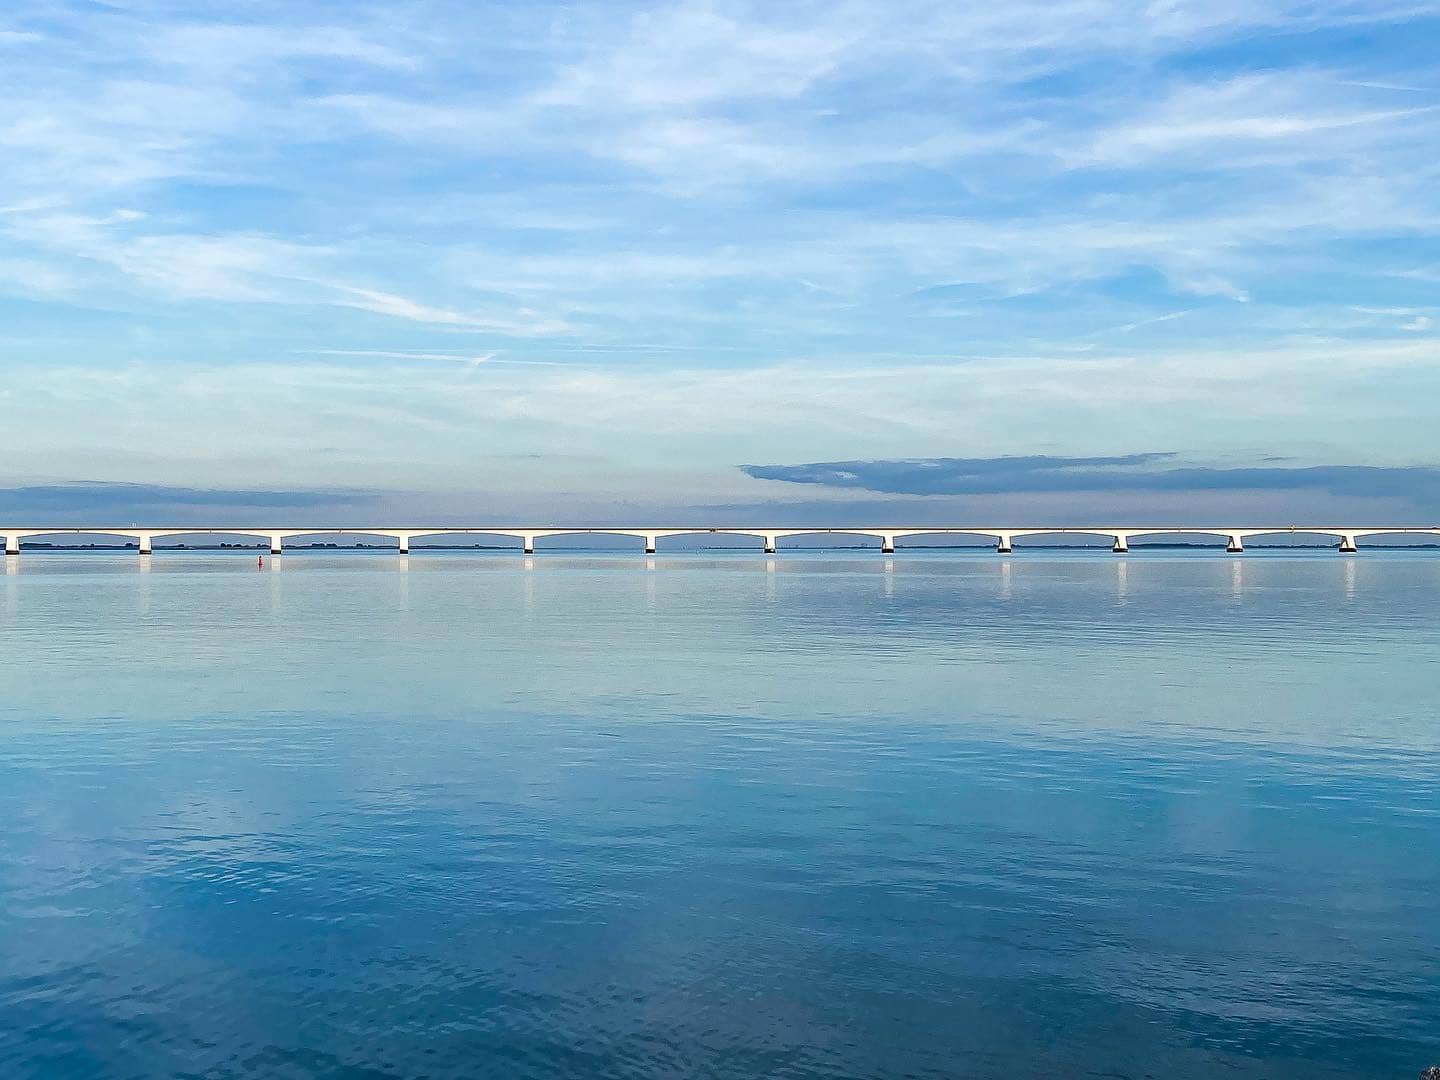 𝗘𝗘𝗡𝗩𝗢𝗨𝗗
Meer is het niet, maar het is alles 💙 Blauw boven en onder, en een witte brug die lucht en water scheidt. Hoe simpel en mooi kan het zijn?

#groetenuitzierikzee